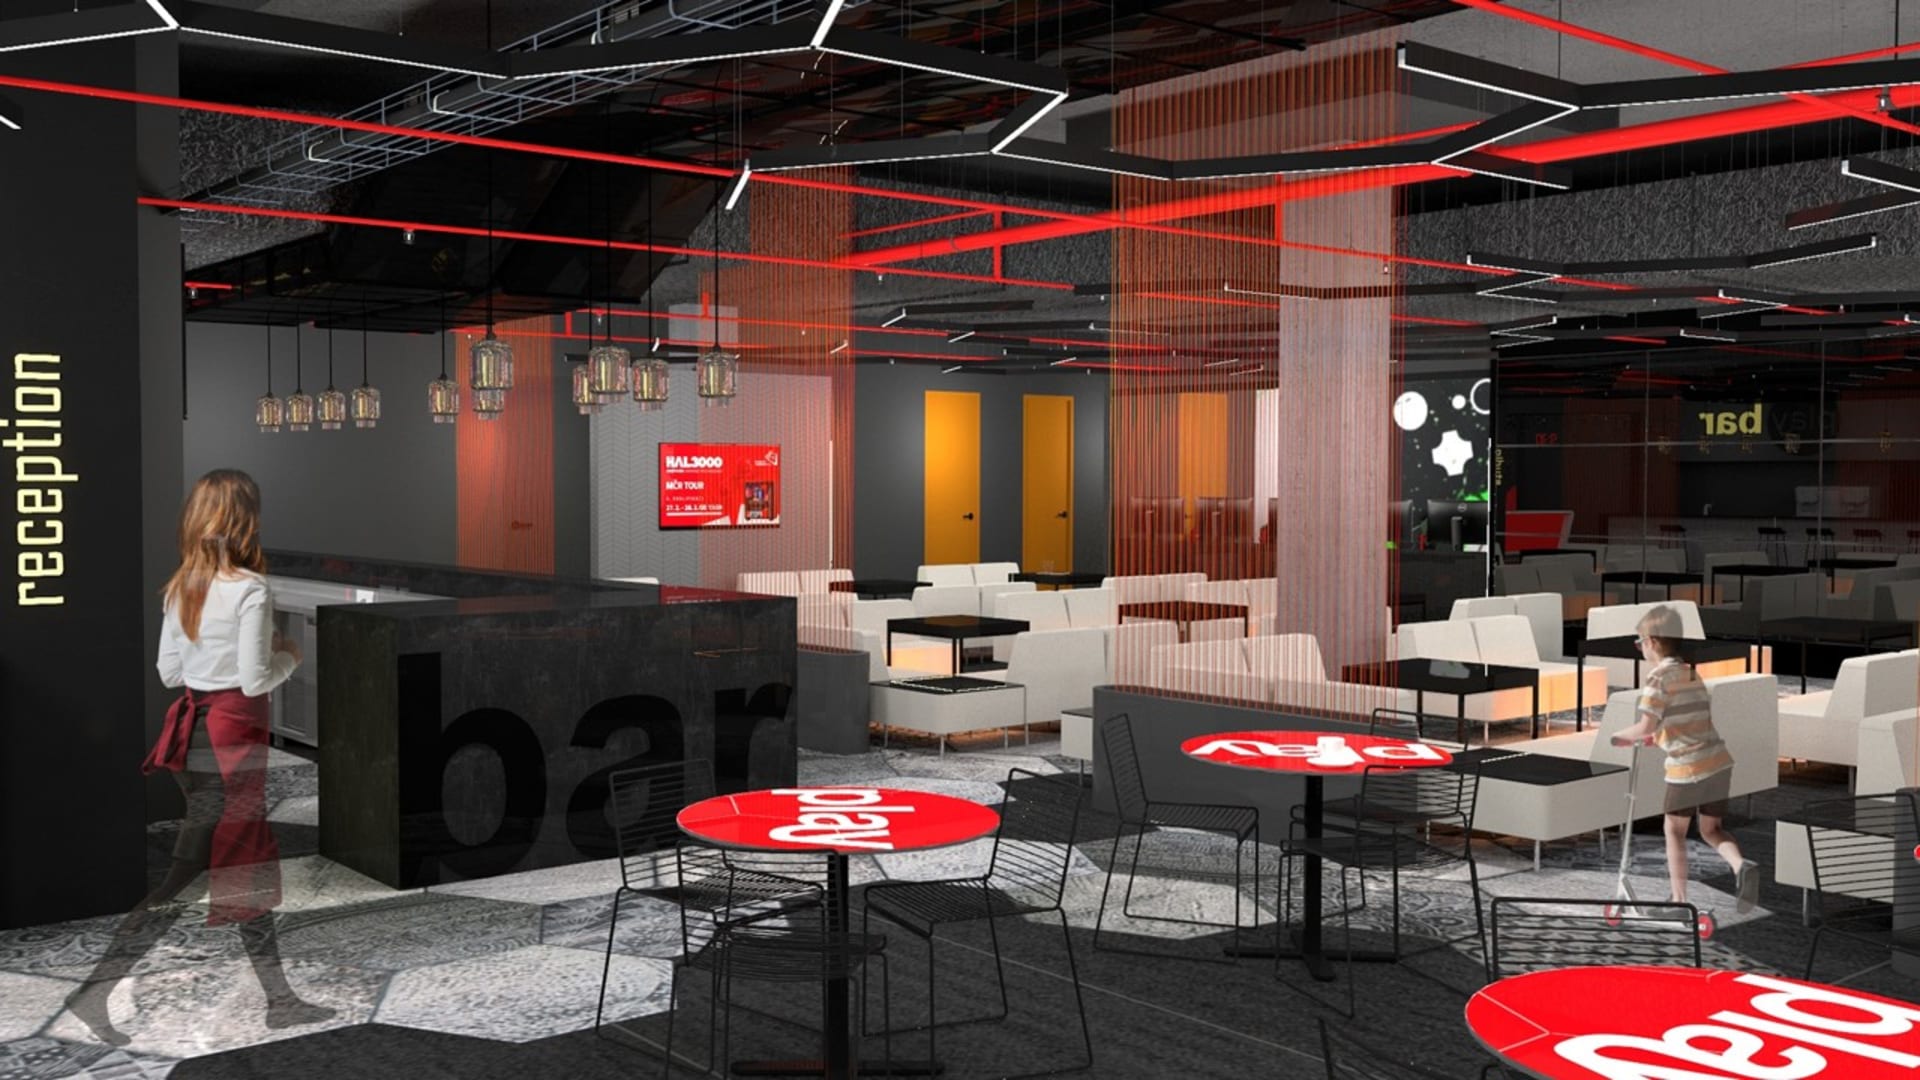 Vizualizace Vodafone PLAyzone Areny slibuje prostory s barem i místnosti s počítači.